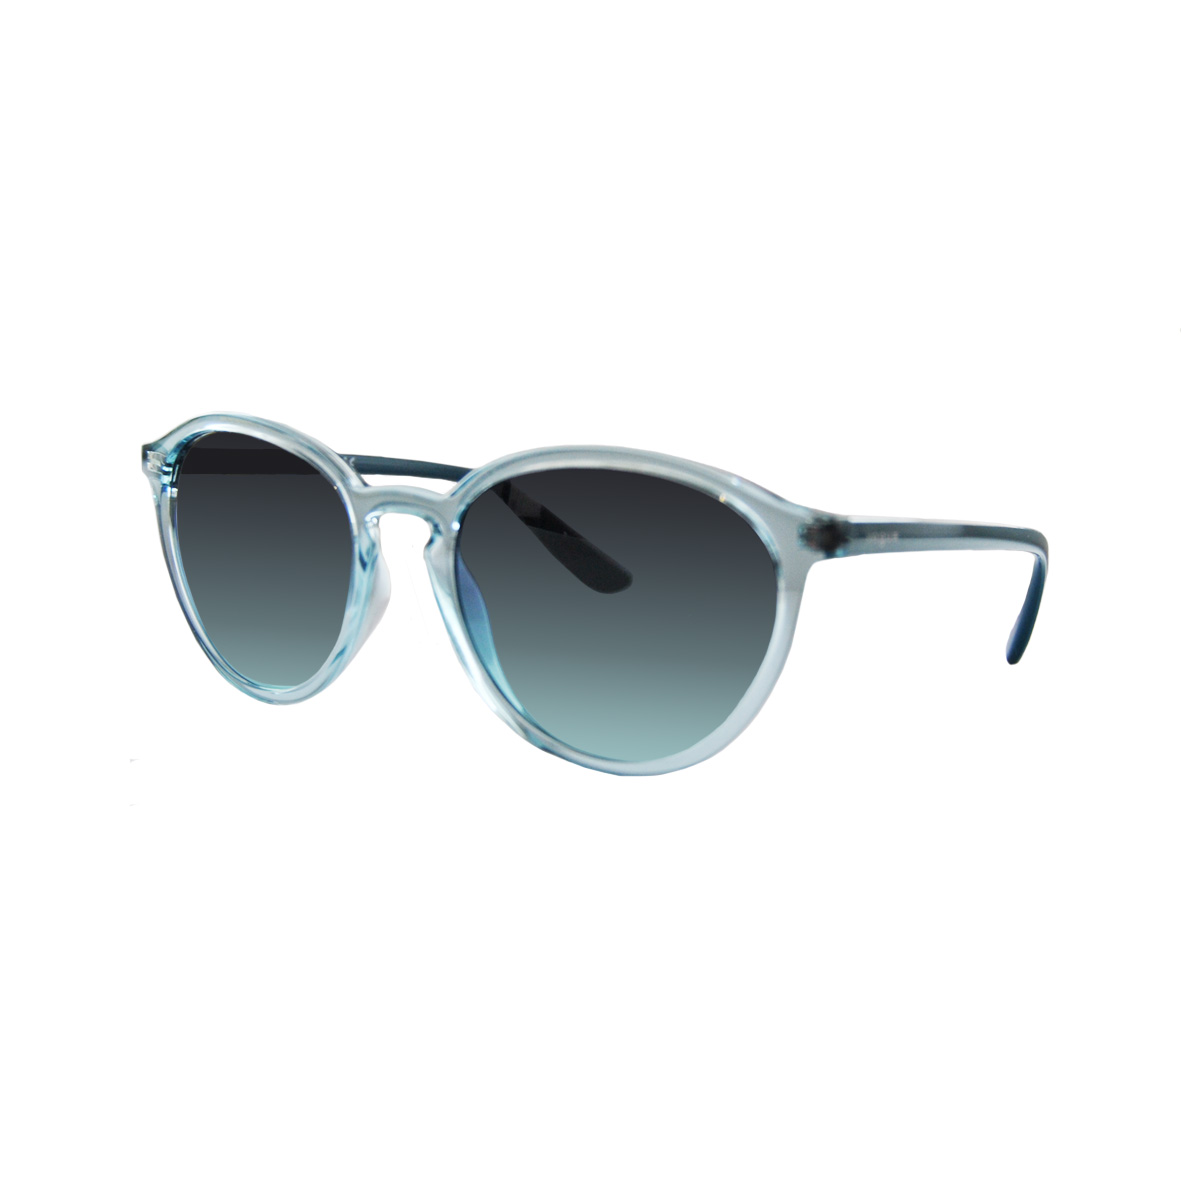 Солнцезащитные очки Vogue модель 5374S                      -30%